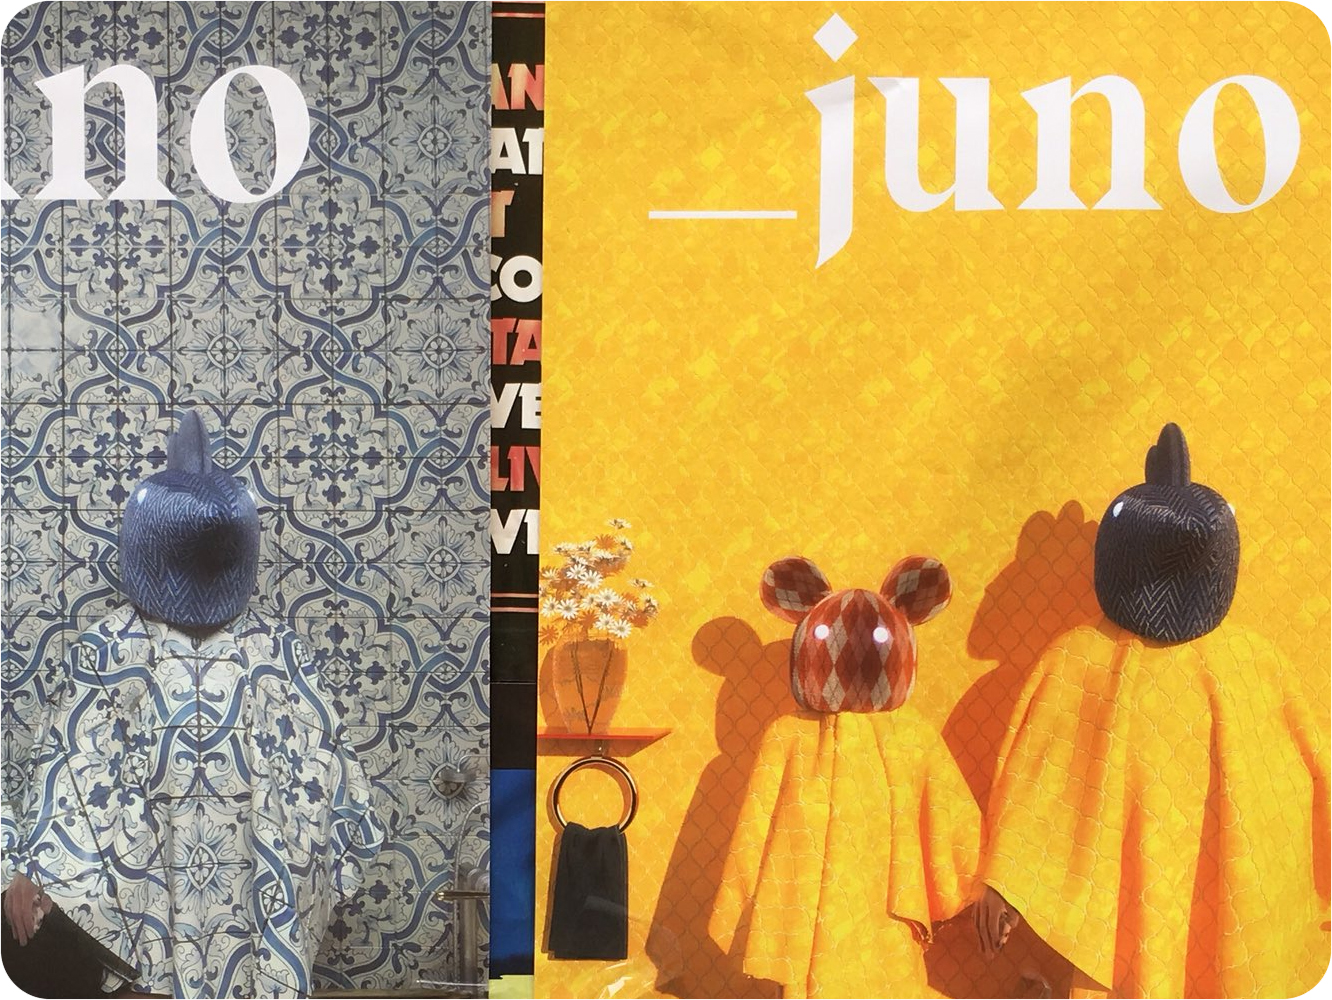  El «»»»misterioso»»»» dúo  _Juno estrena su primer single ‘_BCN626’, con un espectacular vídeo